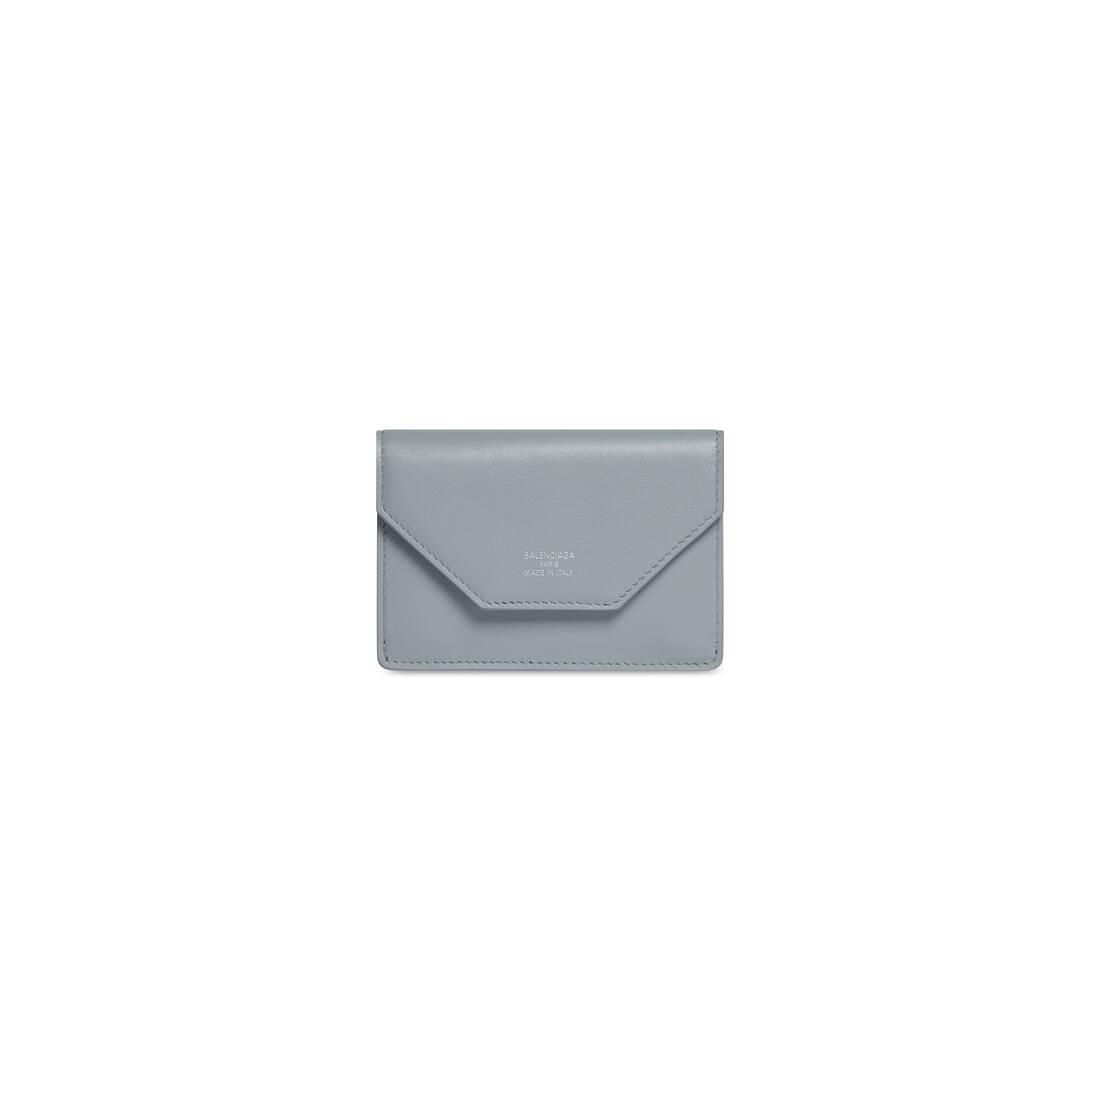 BALENCIAGA Papier mini printed texturedleather wallet  NETAPORTER